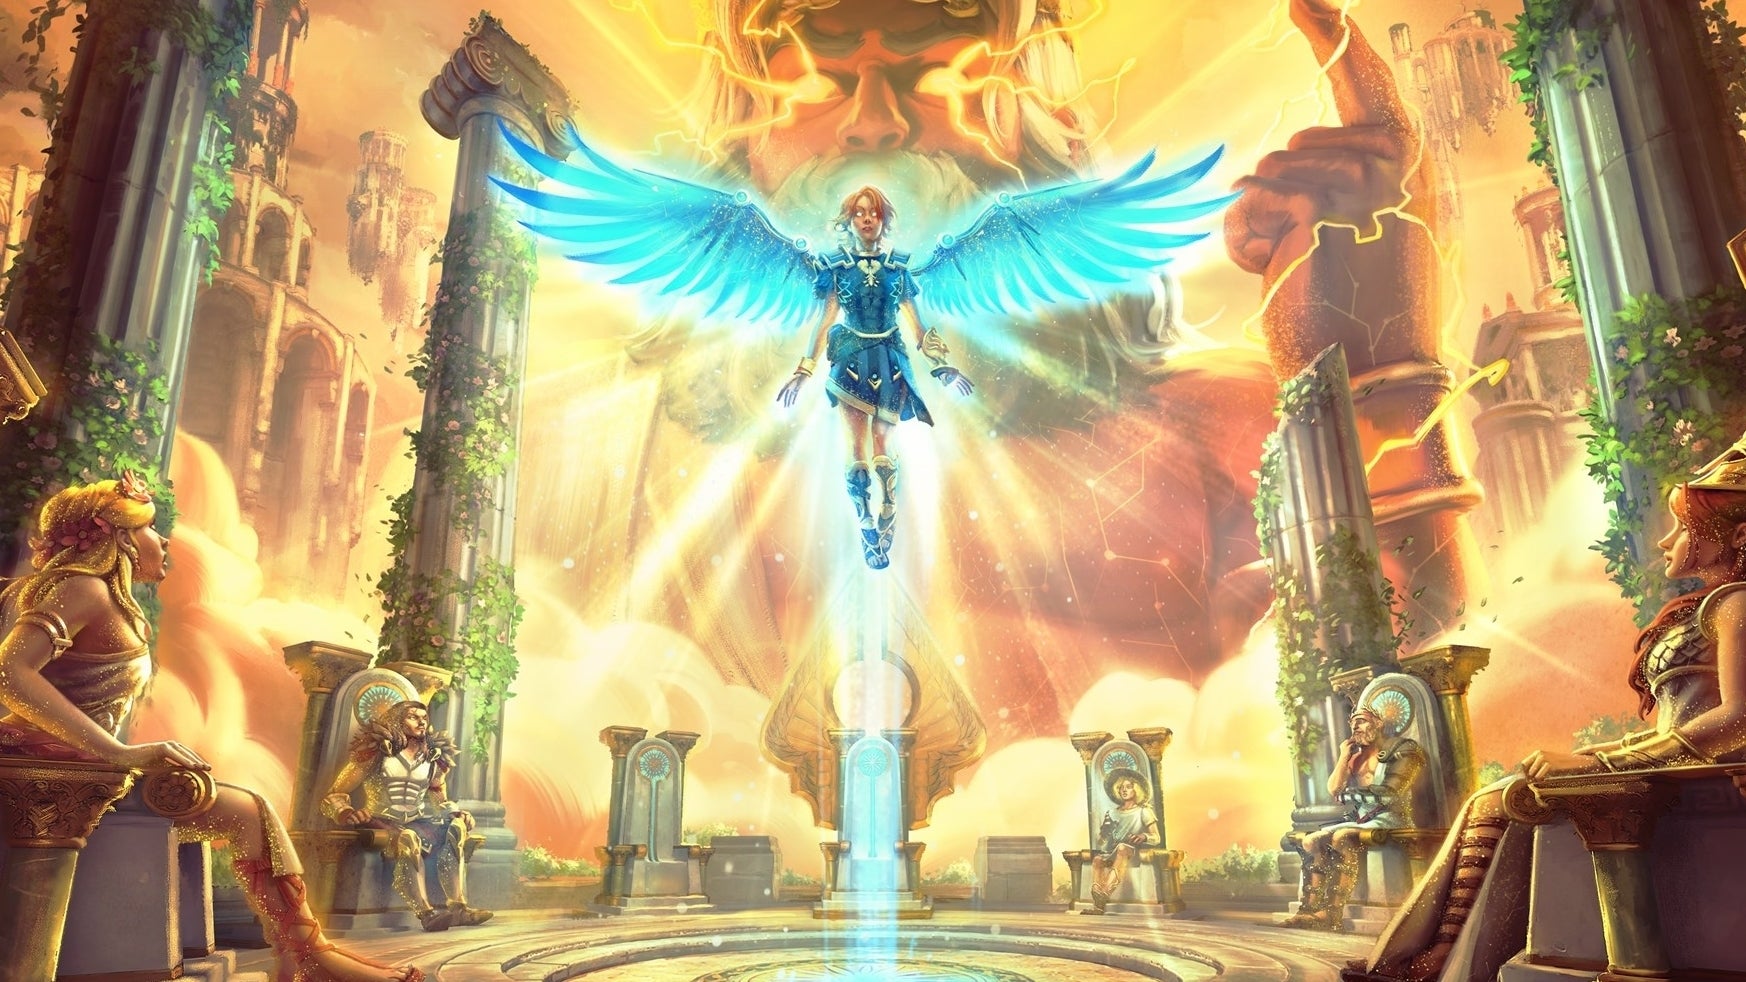 Bilder zu Immortals Fenyx Rising: Demo und DLC "Ein neuer Gott" veröffentlicht - auf in die Götterprüfung